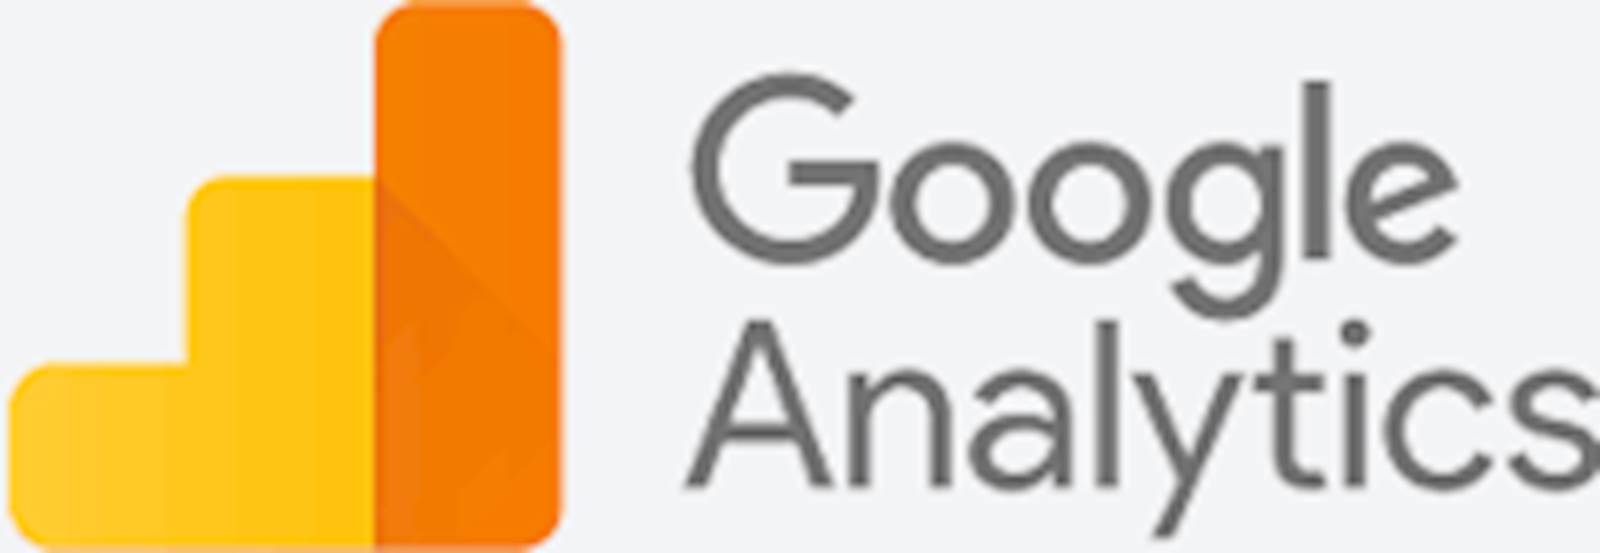 Google Analytics Course Details